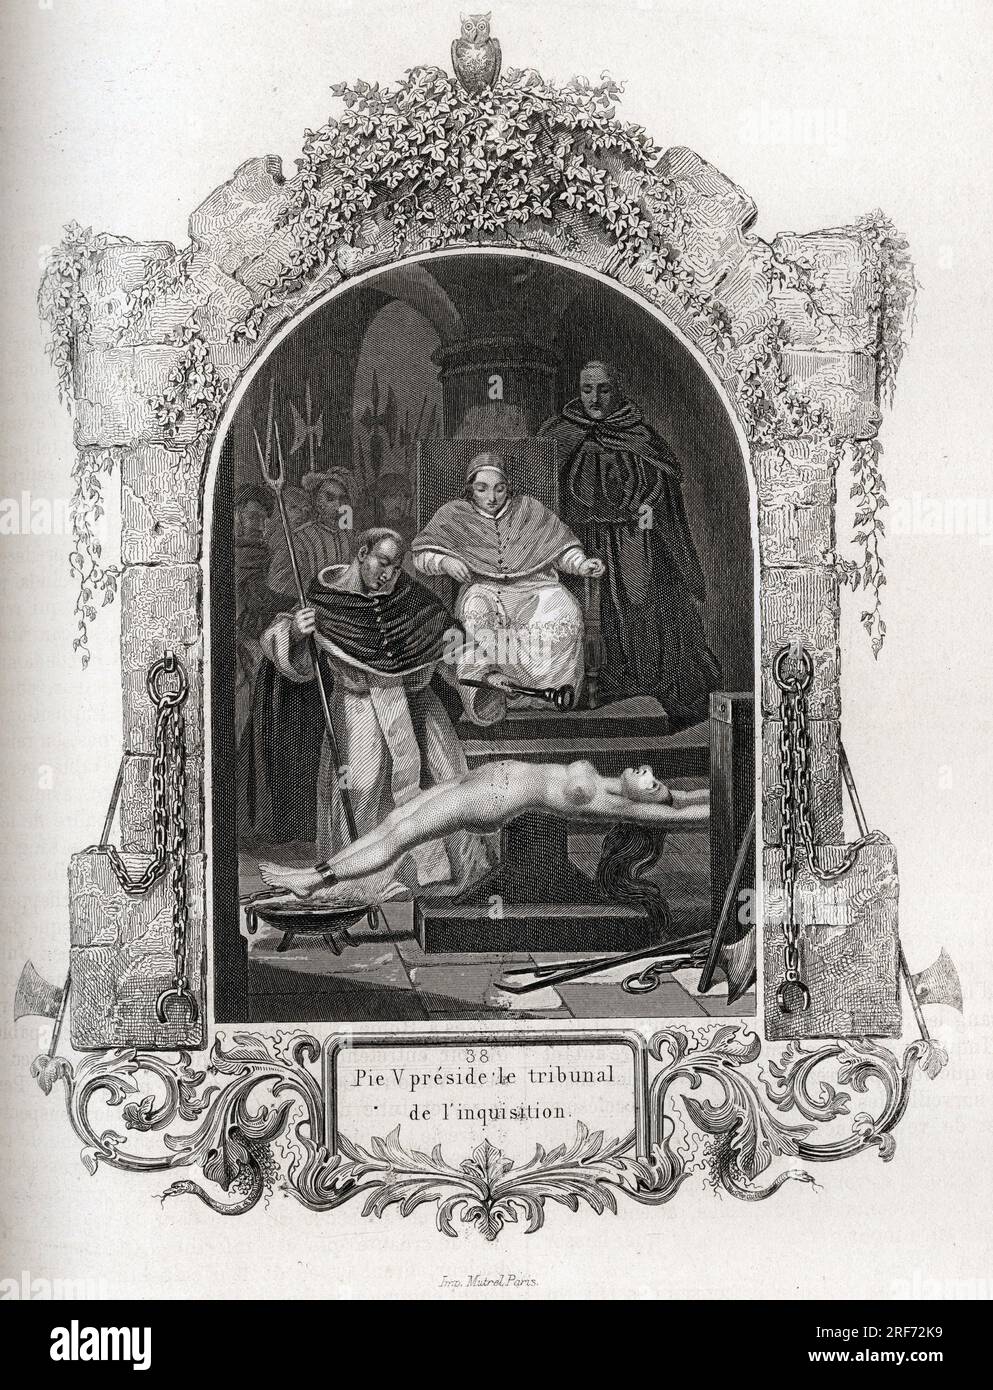 Pie V (Pius ou Pio) (1504-1572) preside le tribunal de l'inquisition. Gravure pour illustrer Histoire des papes par Maurice Lachatre (1814-1900), librairie du progres, Paris. Stock Photo